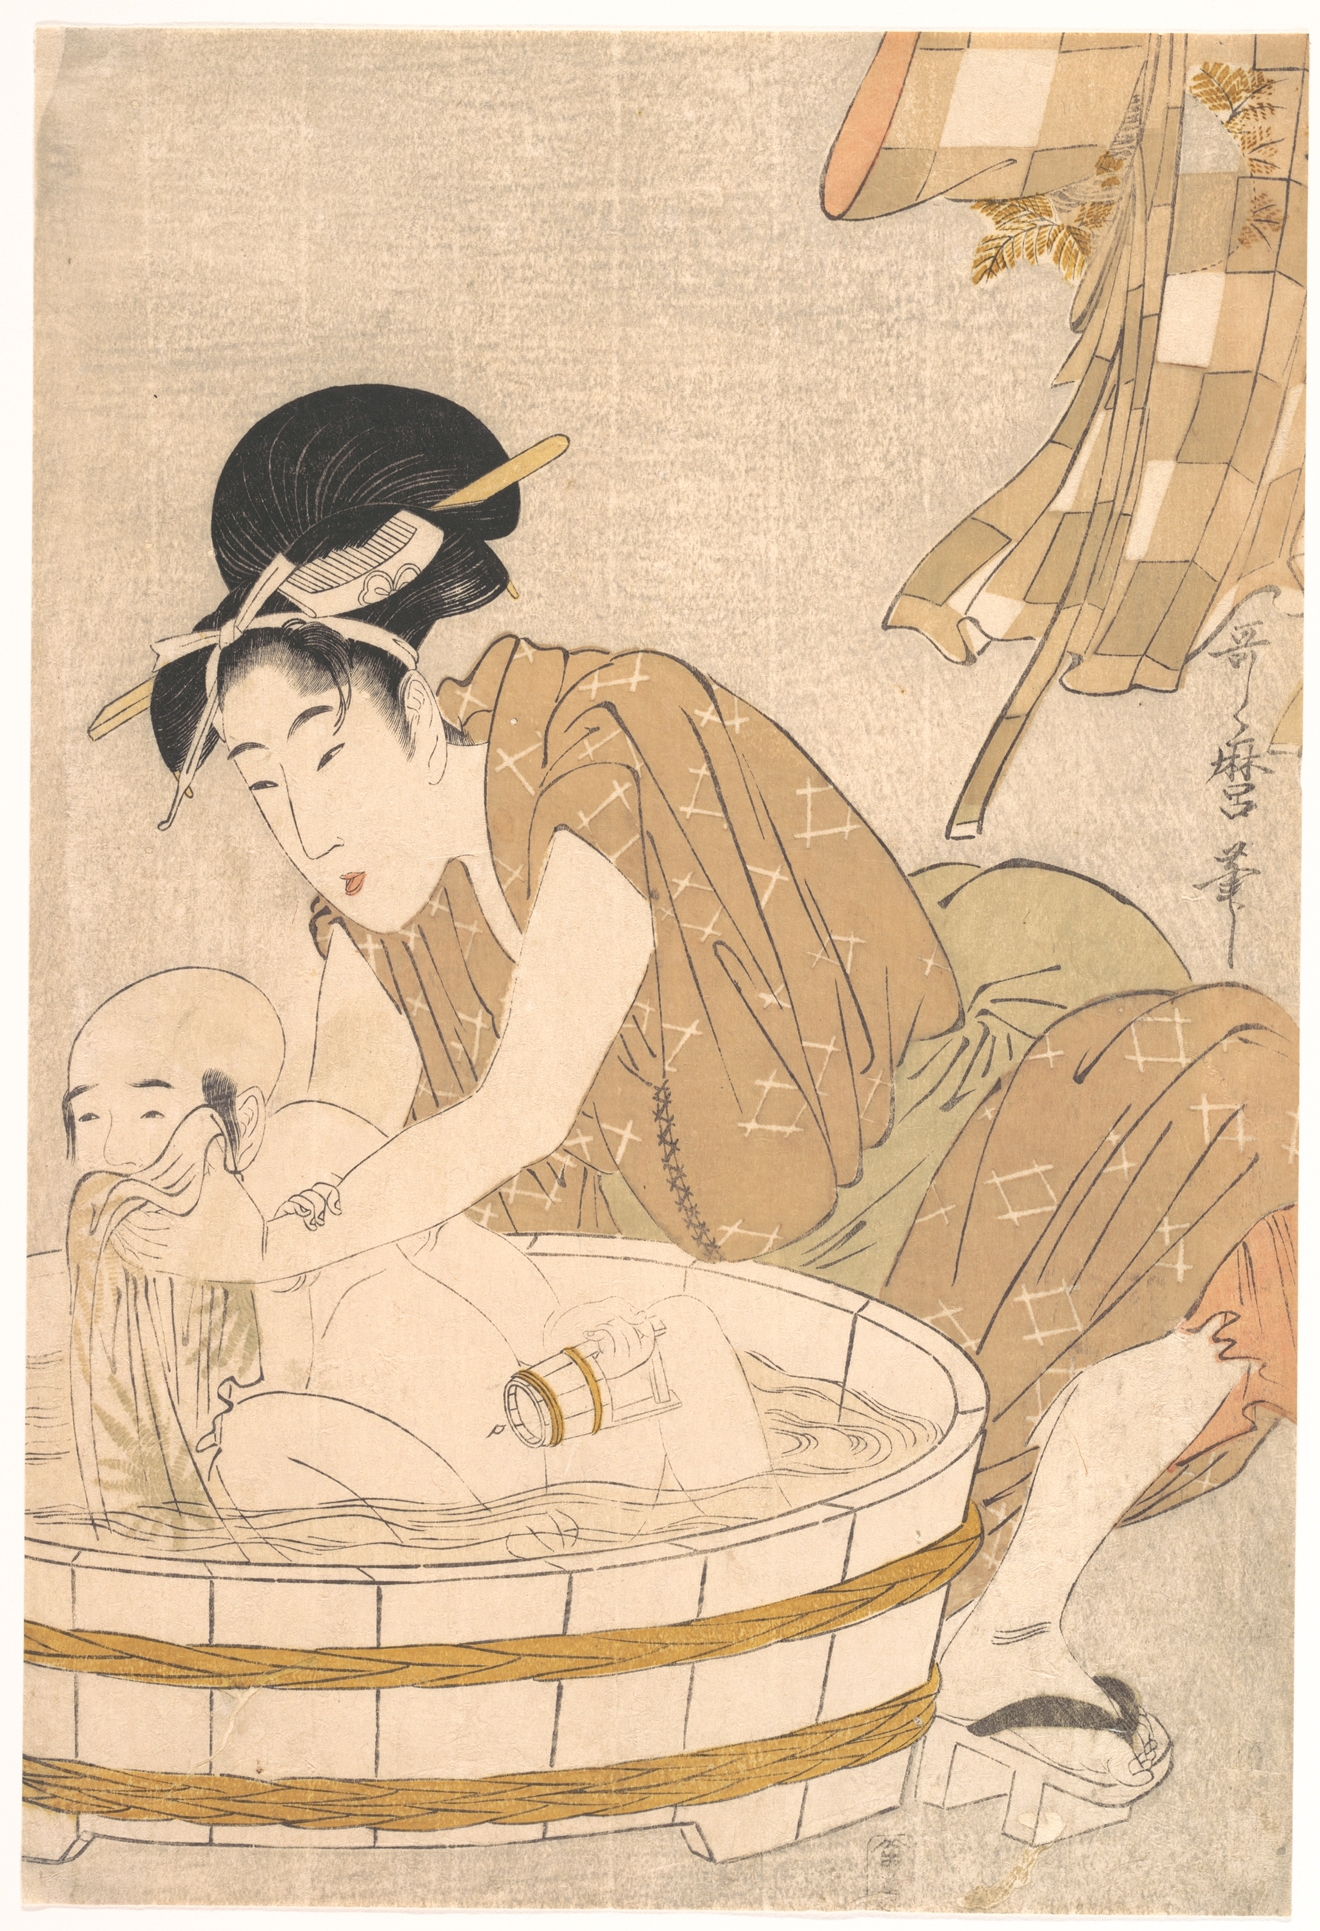 沐浴时间 by 歌麿 喜多川 - c. 1801 - 37.3 x 25.1 cm 